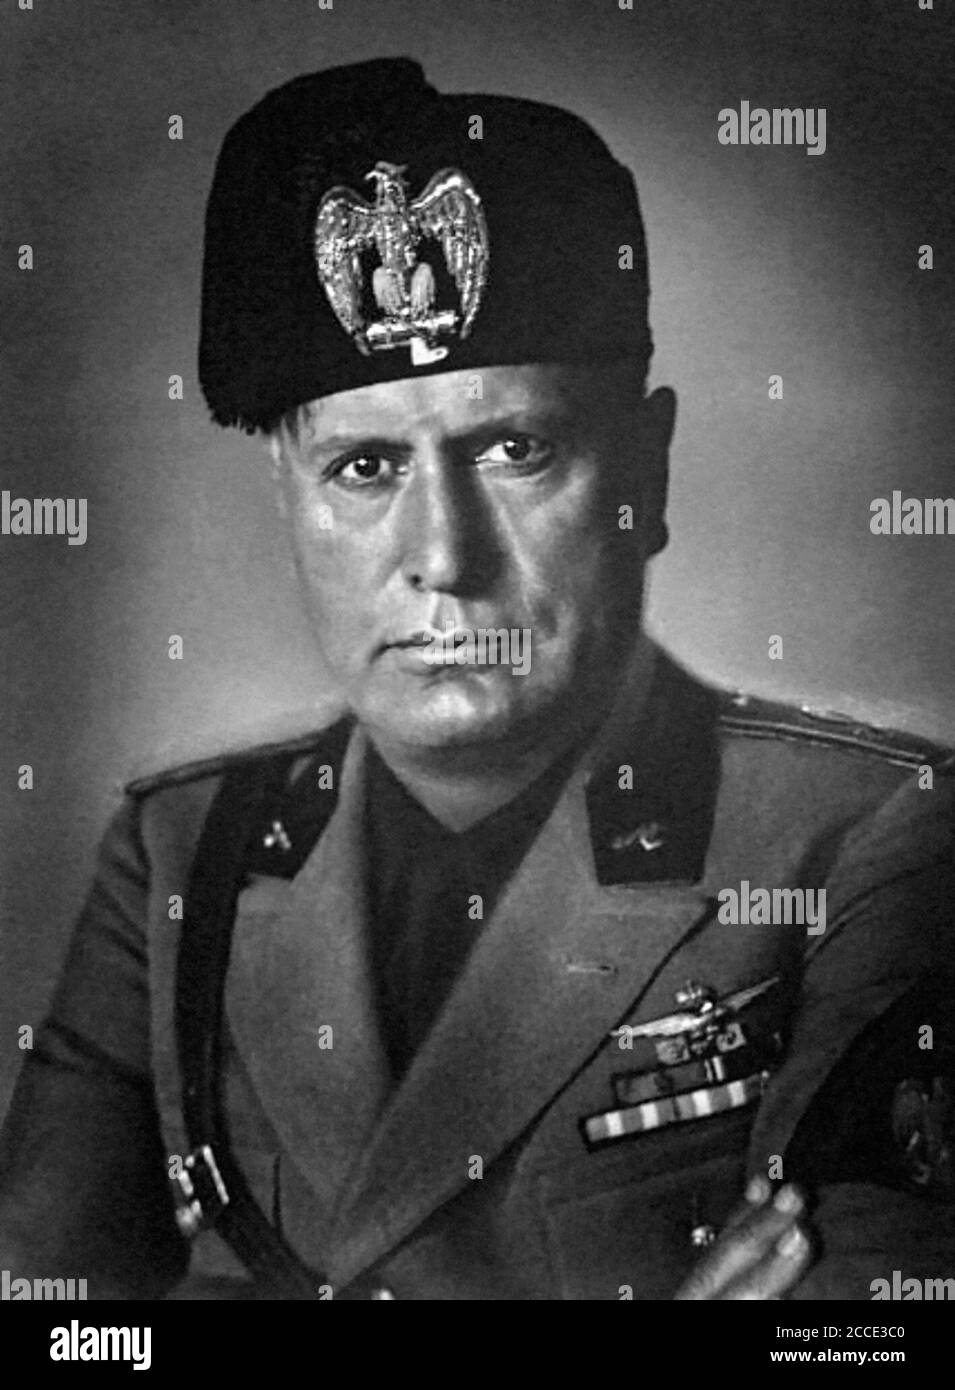 Benito Amilcare Andrea Mussolini (1883-1945), the Italian fascist dictator, in uniform. Photo c.1930 Stock Photo